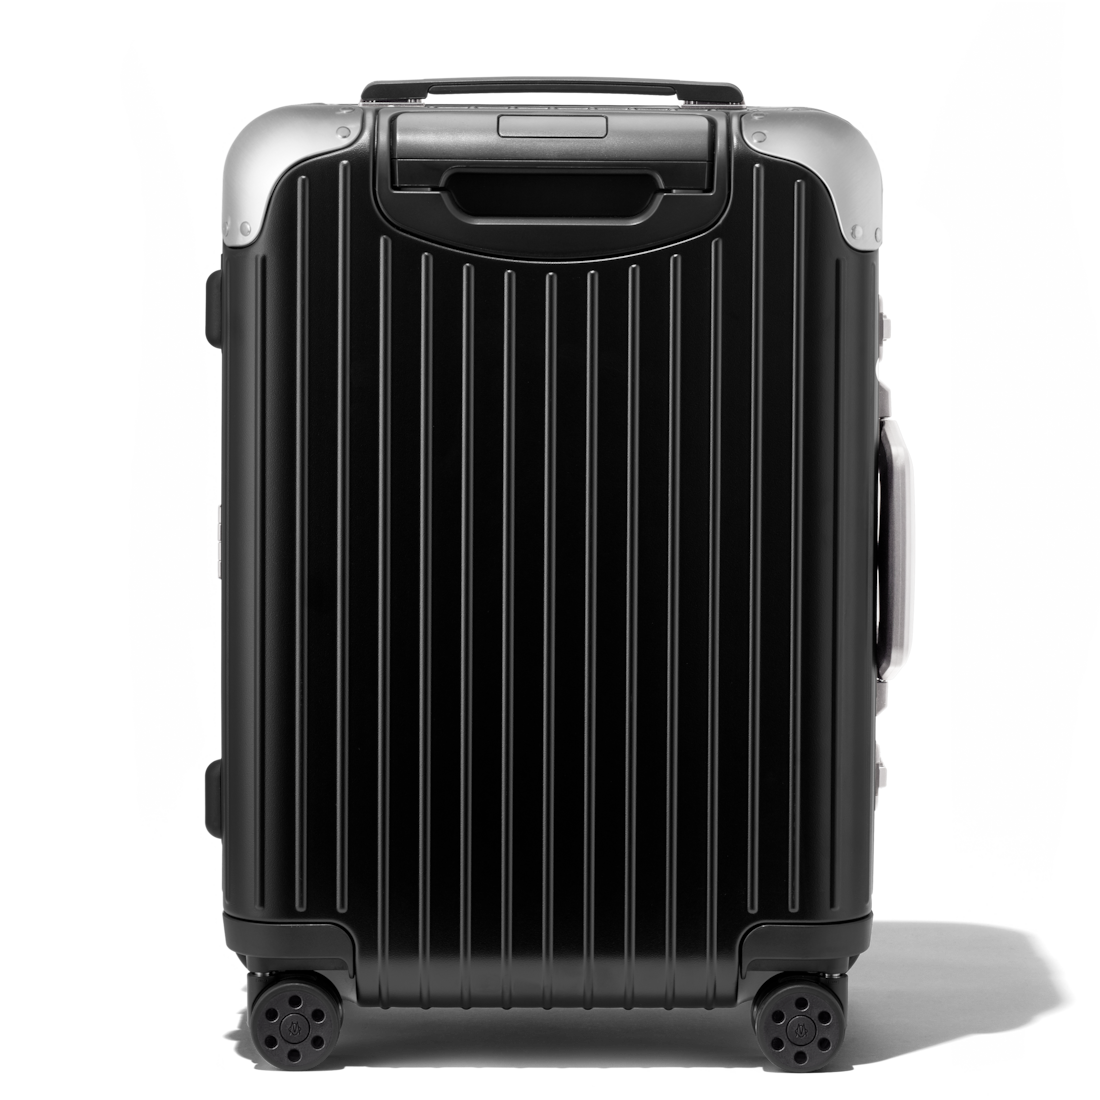 RIMOWA Original Cabin Suitcase for Men